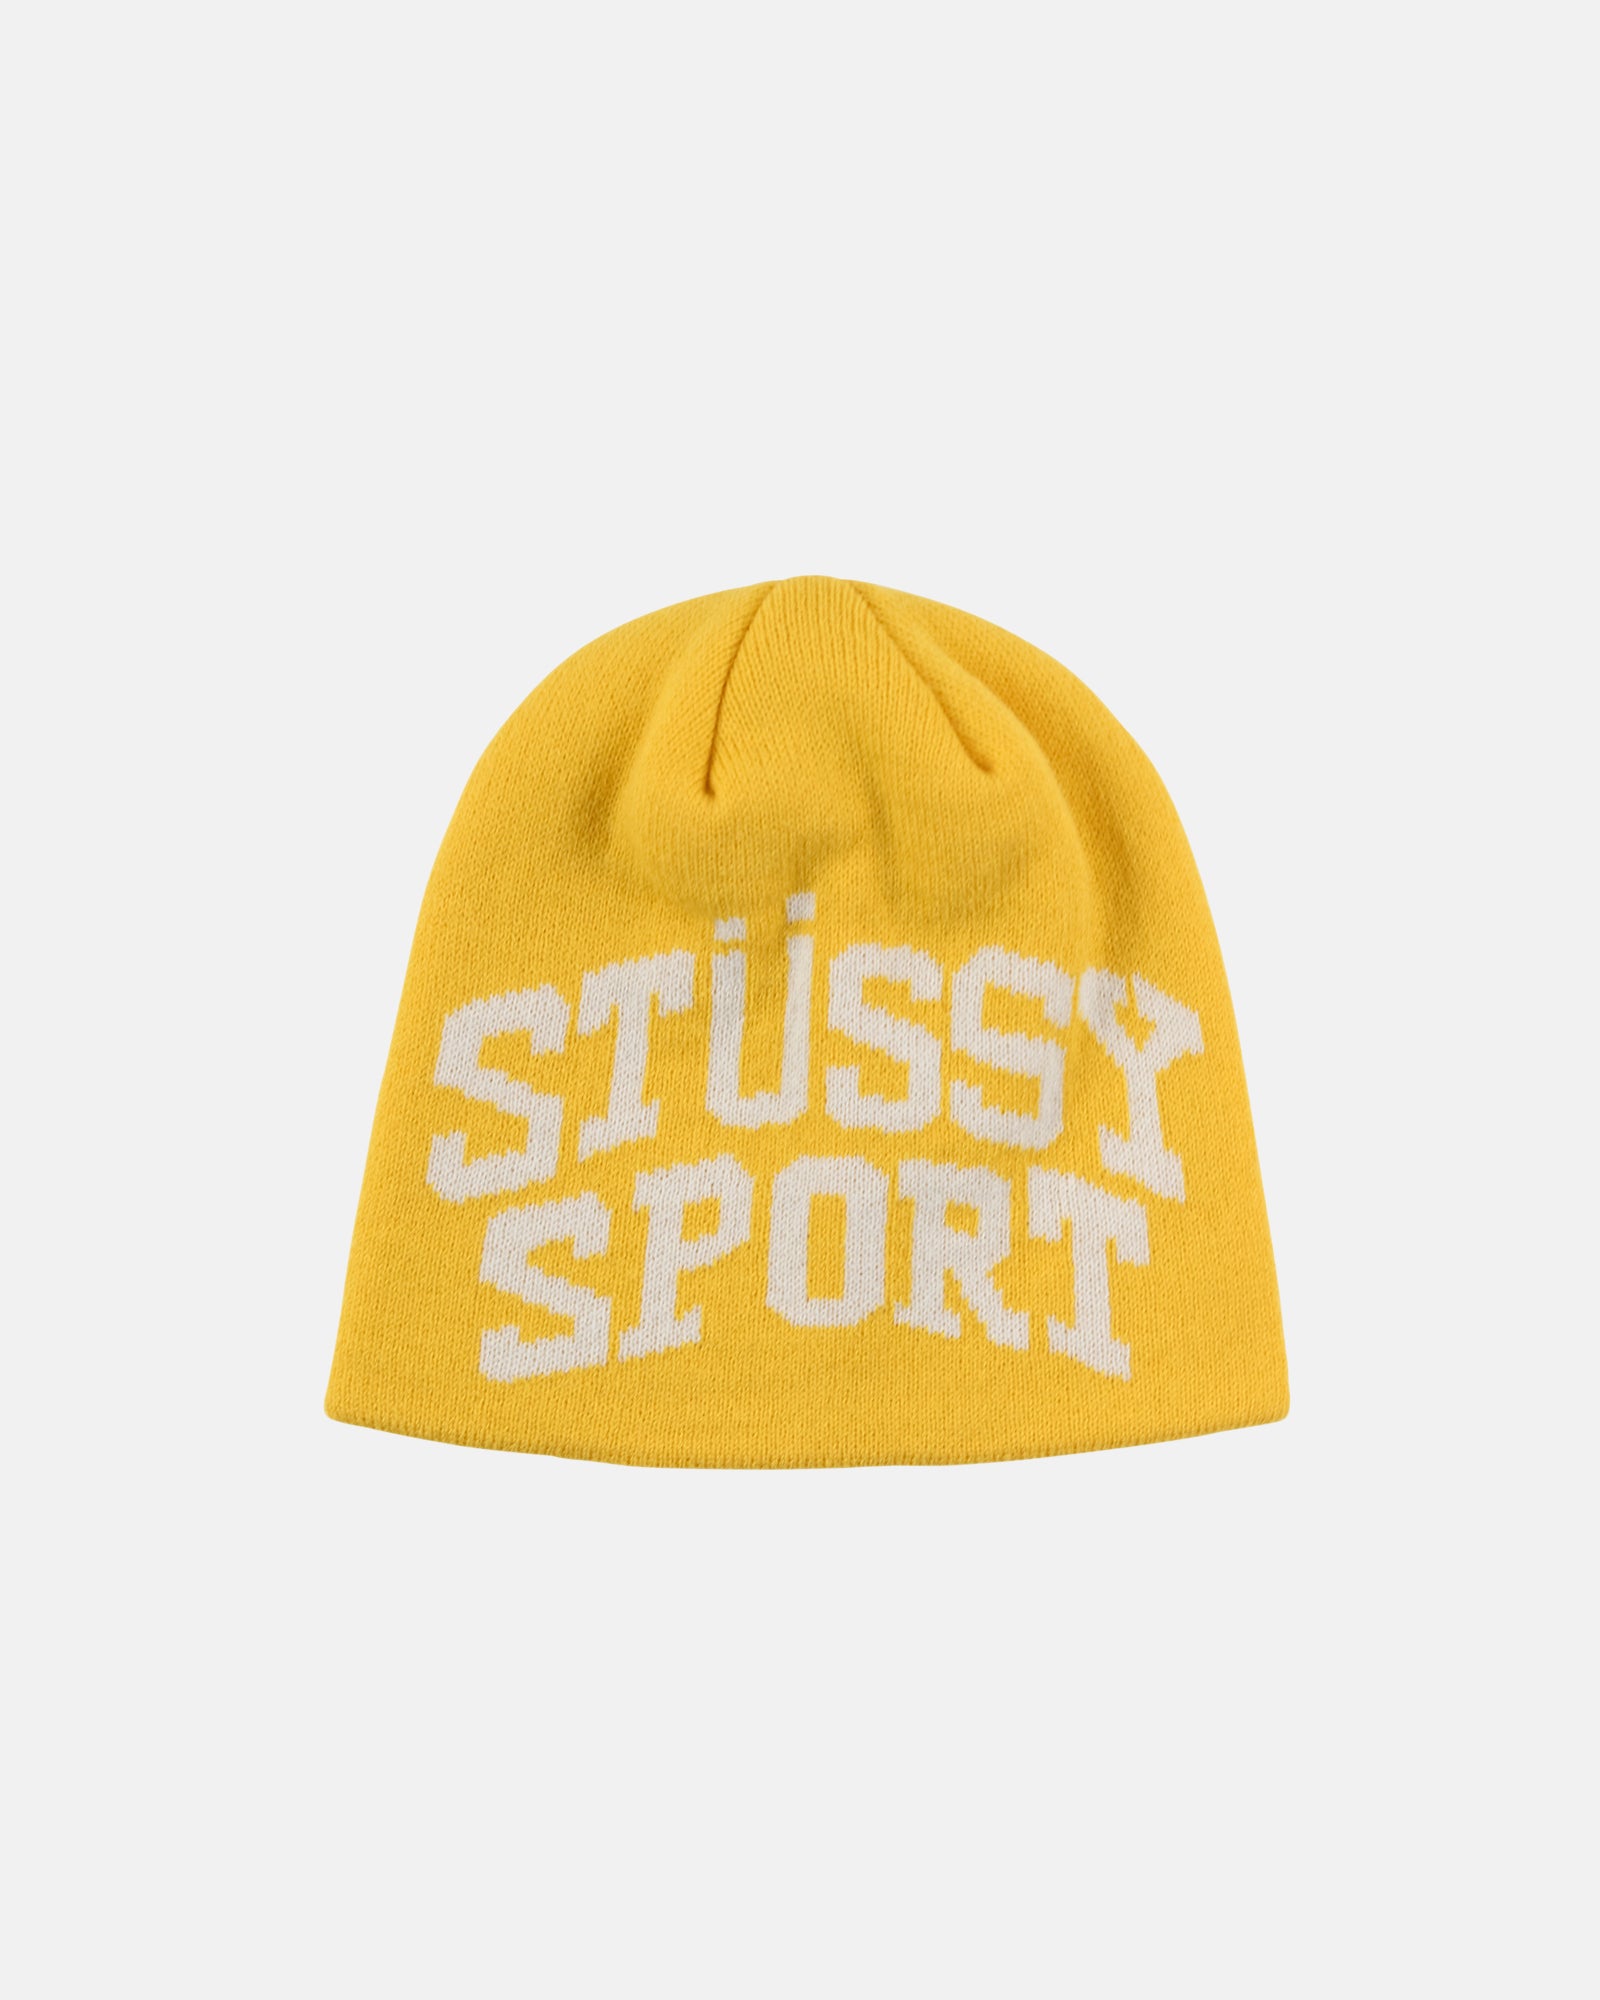 STUSSY sport jacquard skullcap ビーニー - ニットキャップ/ビーニー